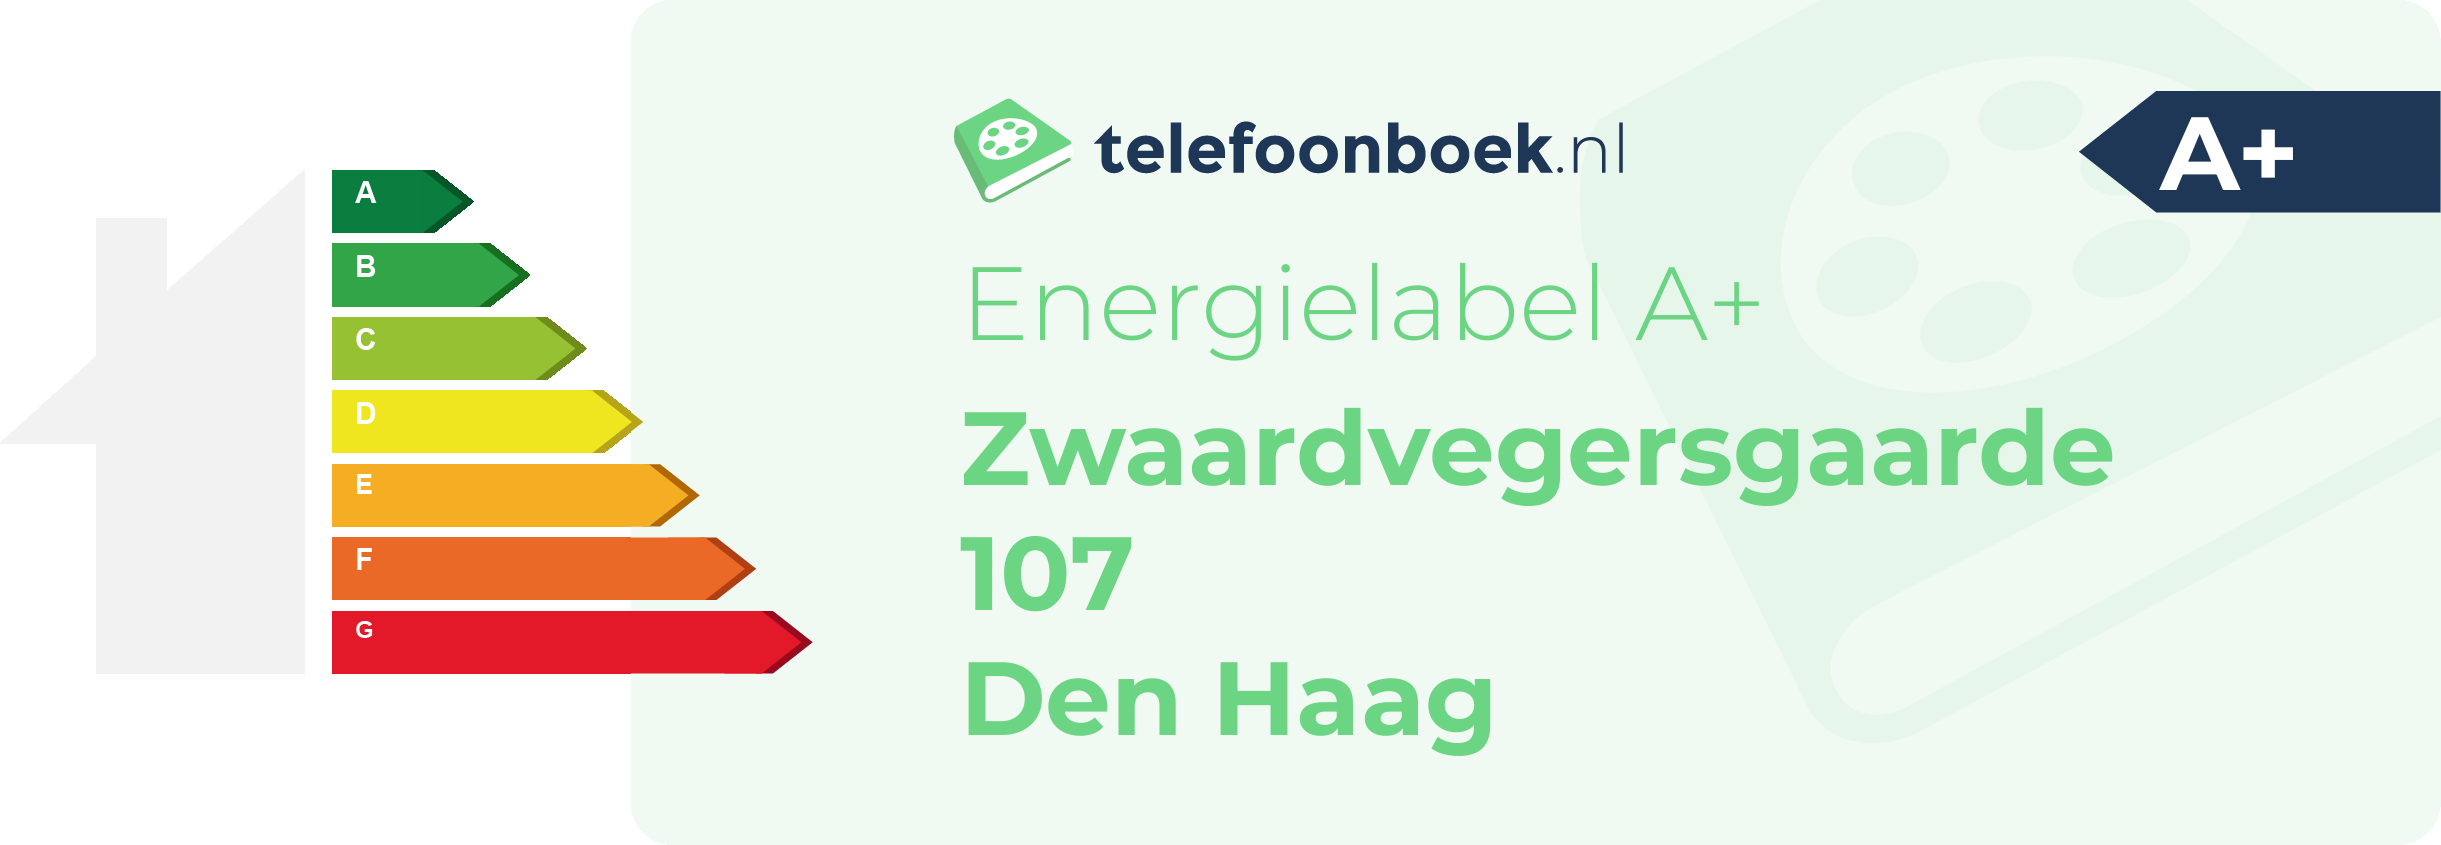 Energielabel Zwaardvegersgaarde 107 Den Haag